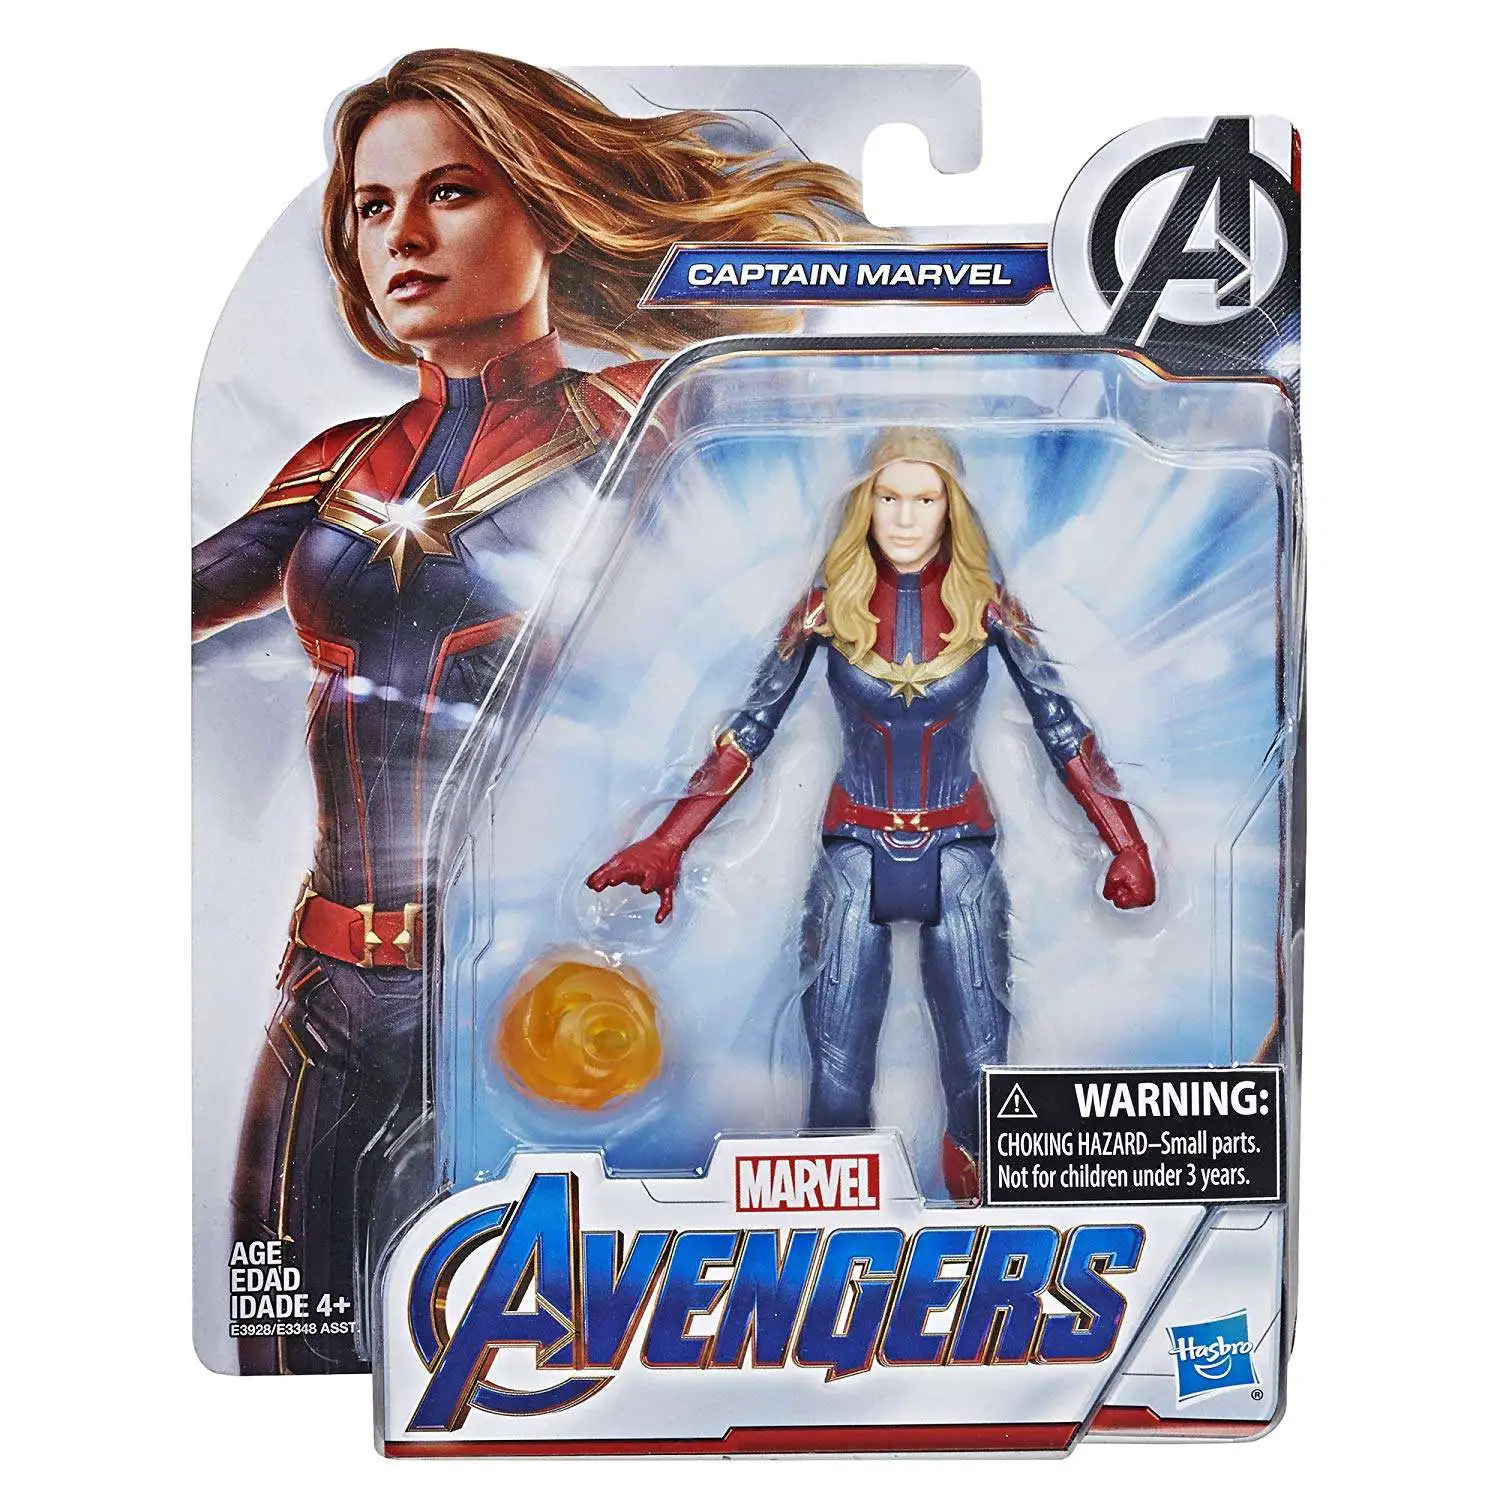 Endgame Hero Captain Marvel 6-Inch Action Figure Hasbro 2019 Avengers 